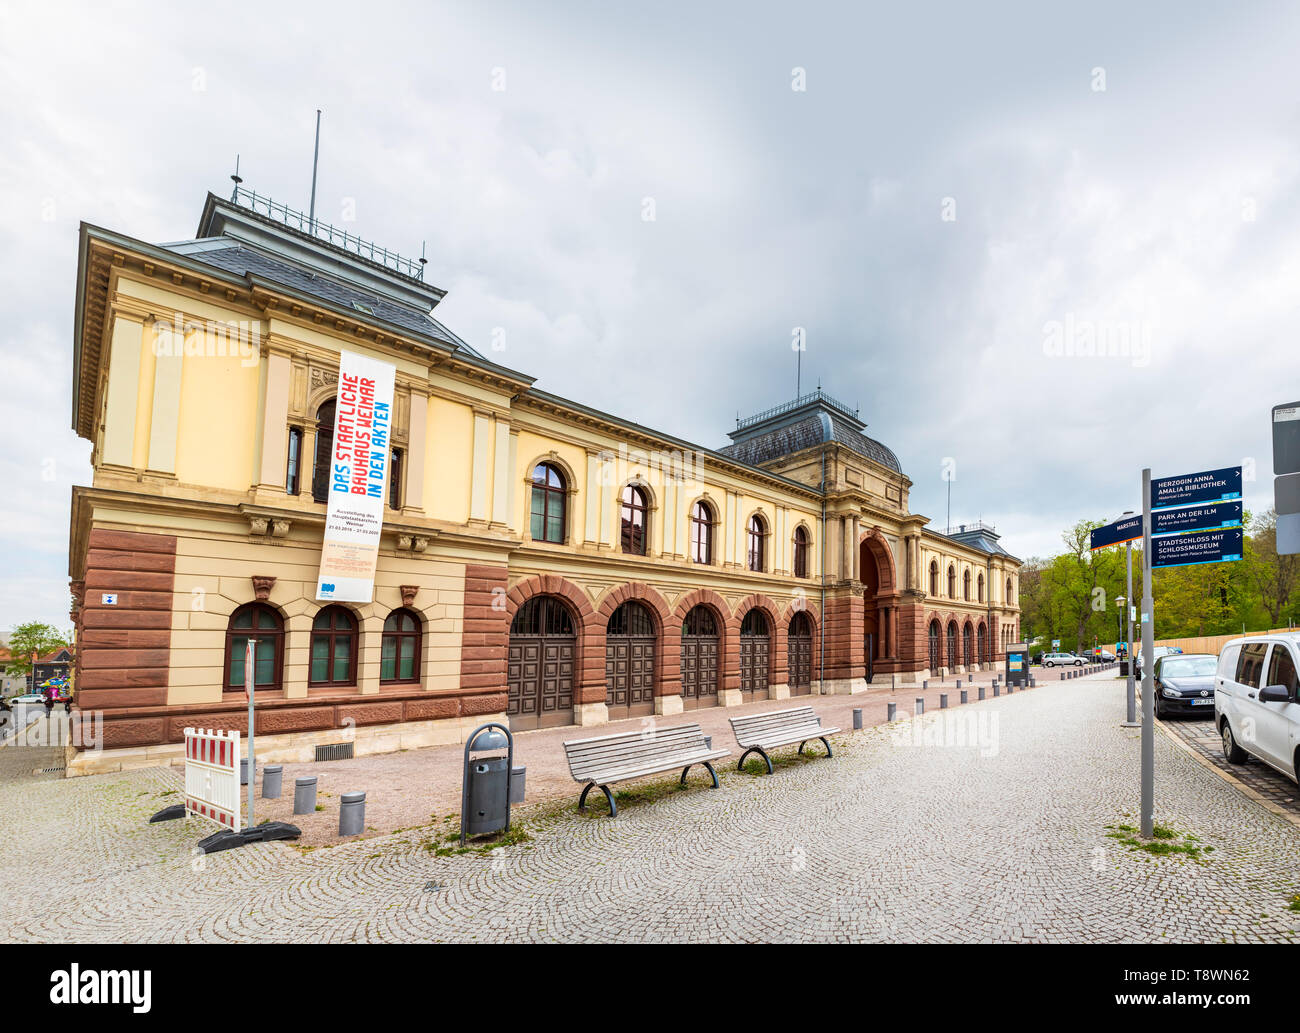 WEIMAR, Germania - circa aprile, 2019: Turingia centrale dell'archivio di stato di Weimar in Turingia, Germania Foto Stock